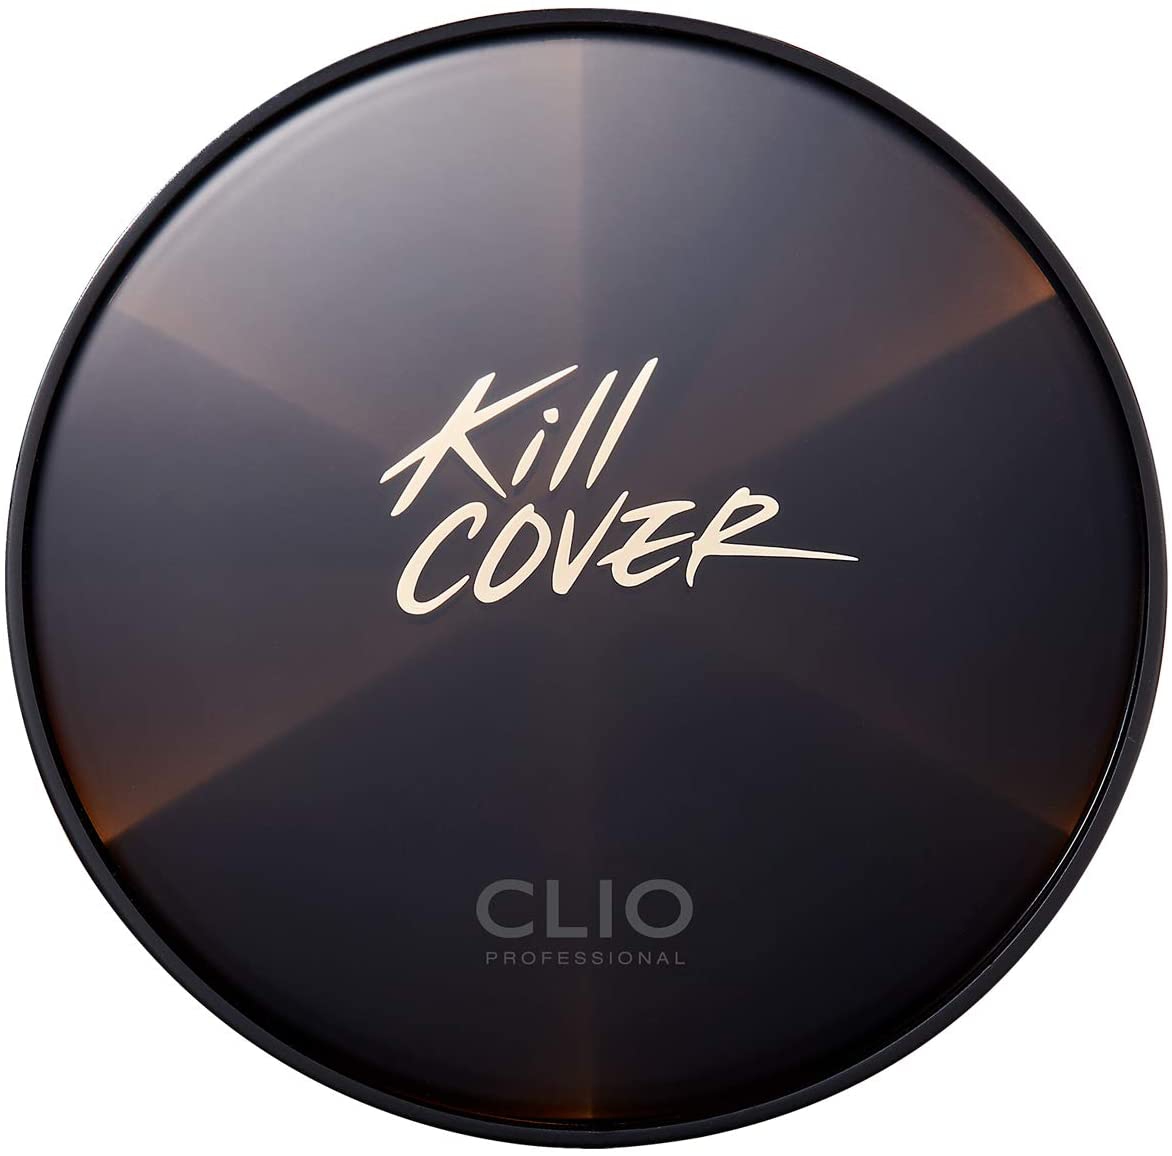 CLIO(クリオ) キル カバー コンシール クッションの商品画像サムネ2 